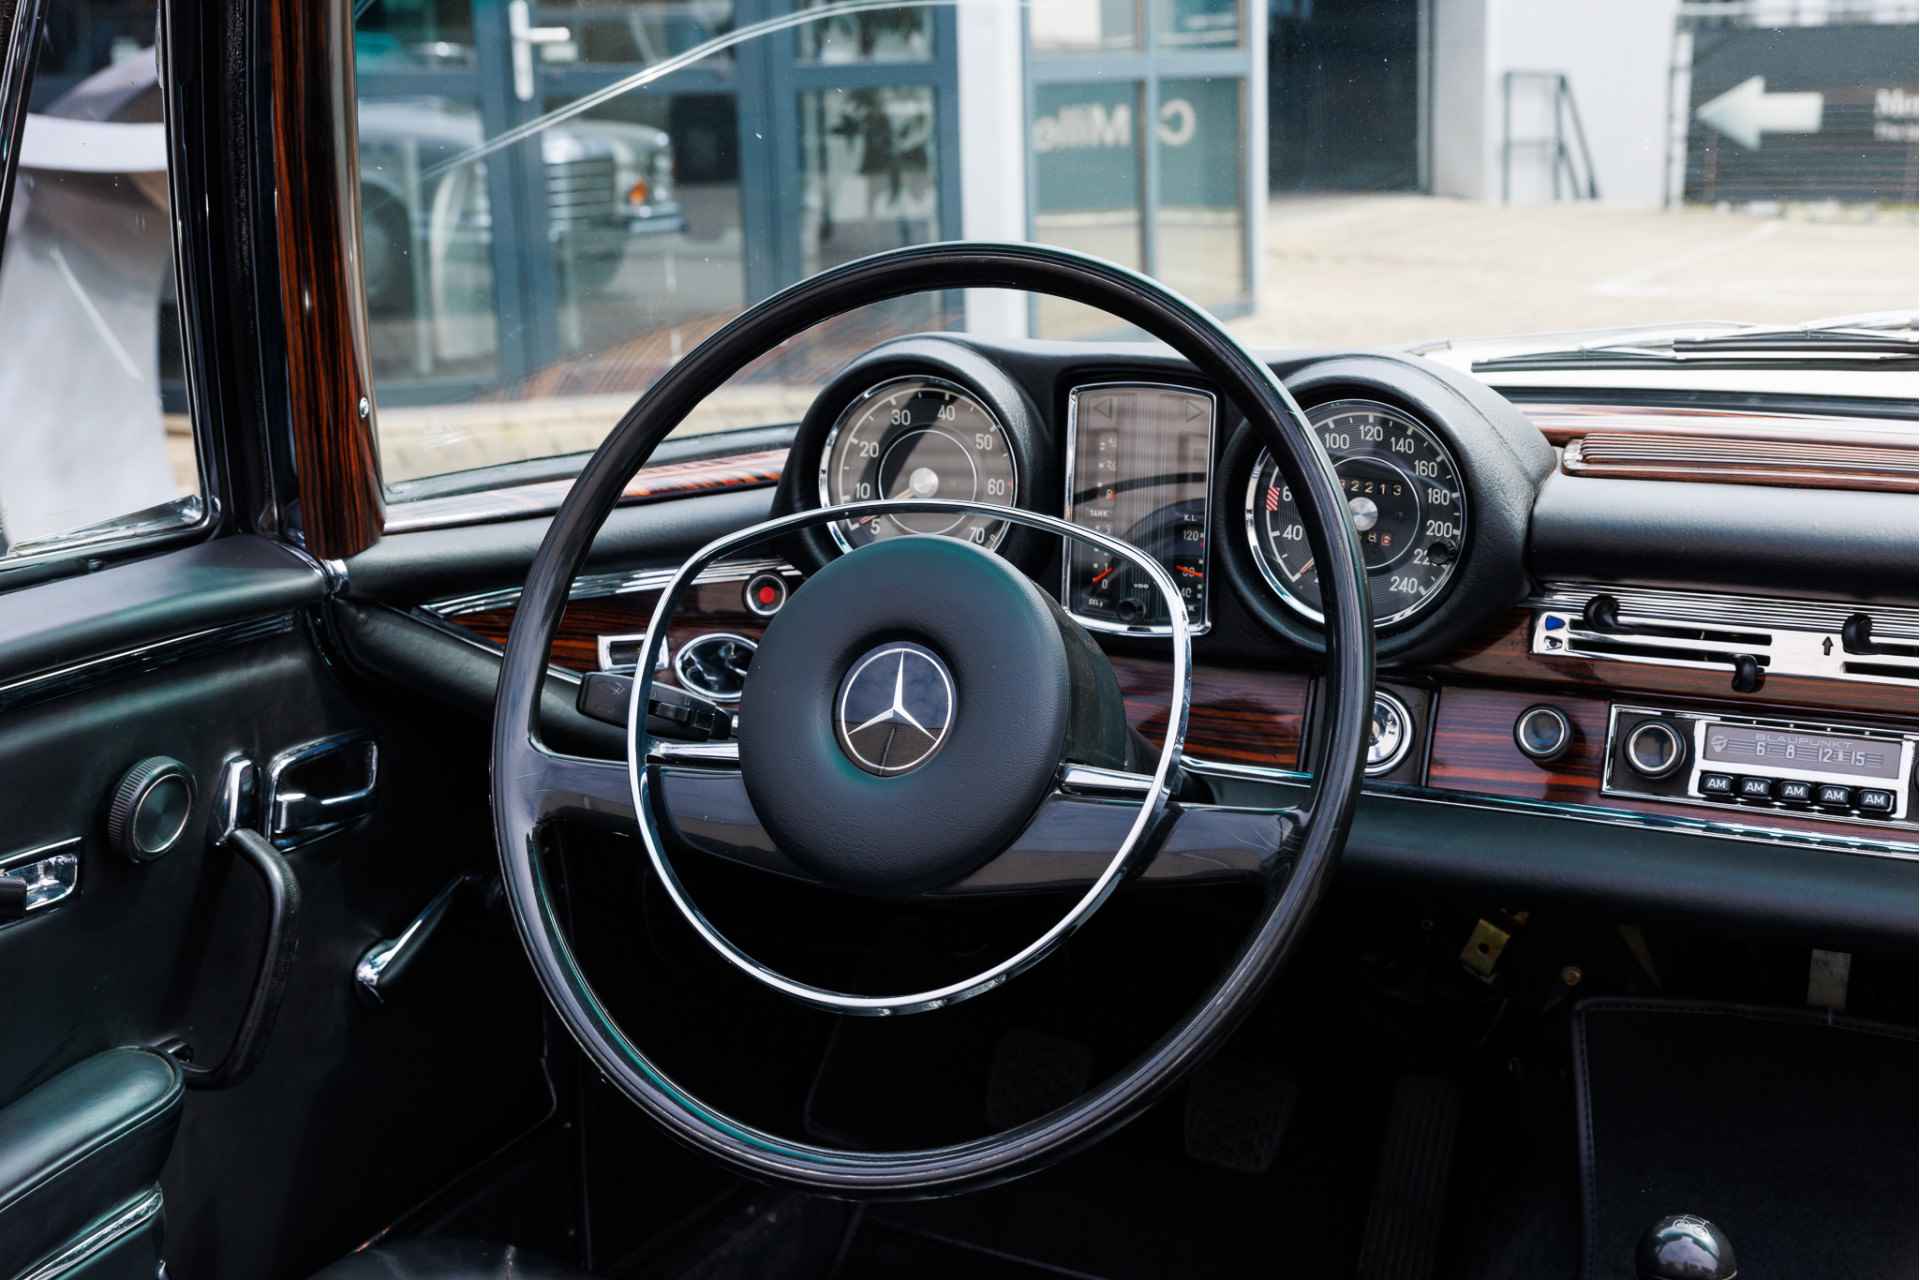 Mercedes-Benz W111 280 SE Cabriolet Volledig gerestaureerd  Verkoop in opdracht | Flachkühler | Compleet gerestaureerd - 28/31